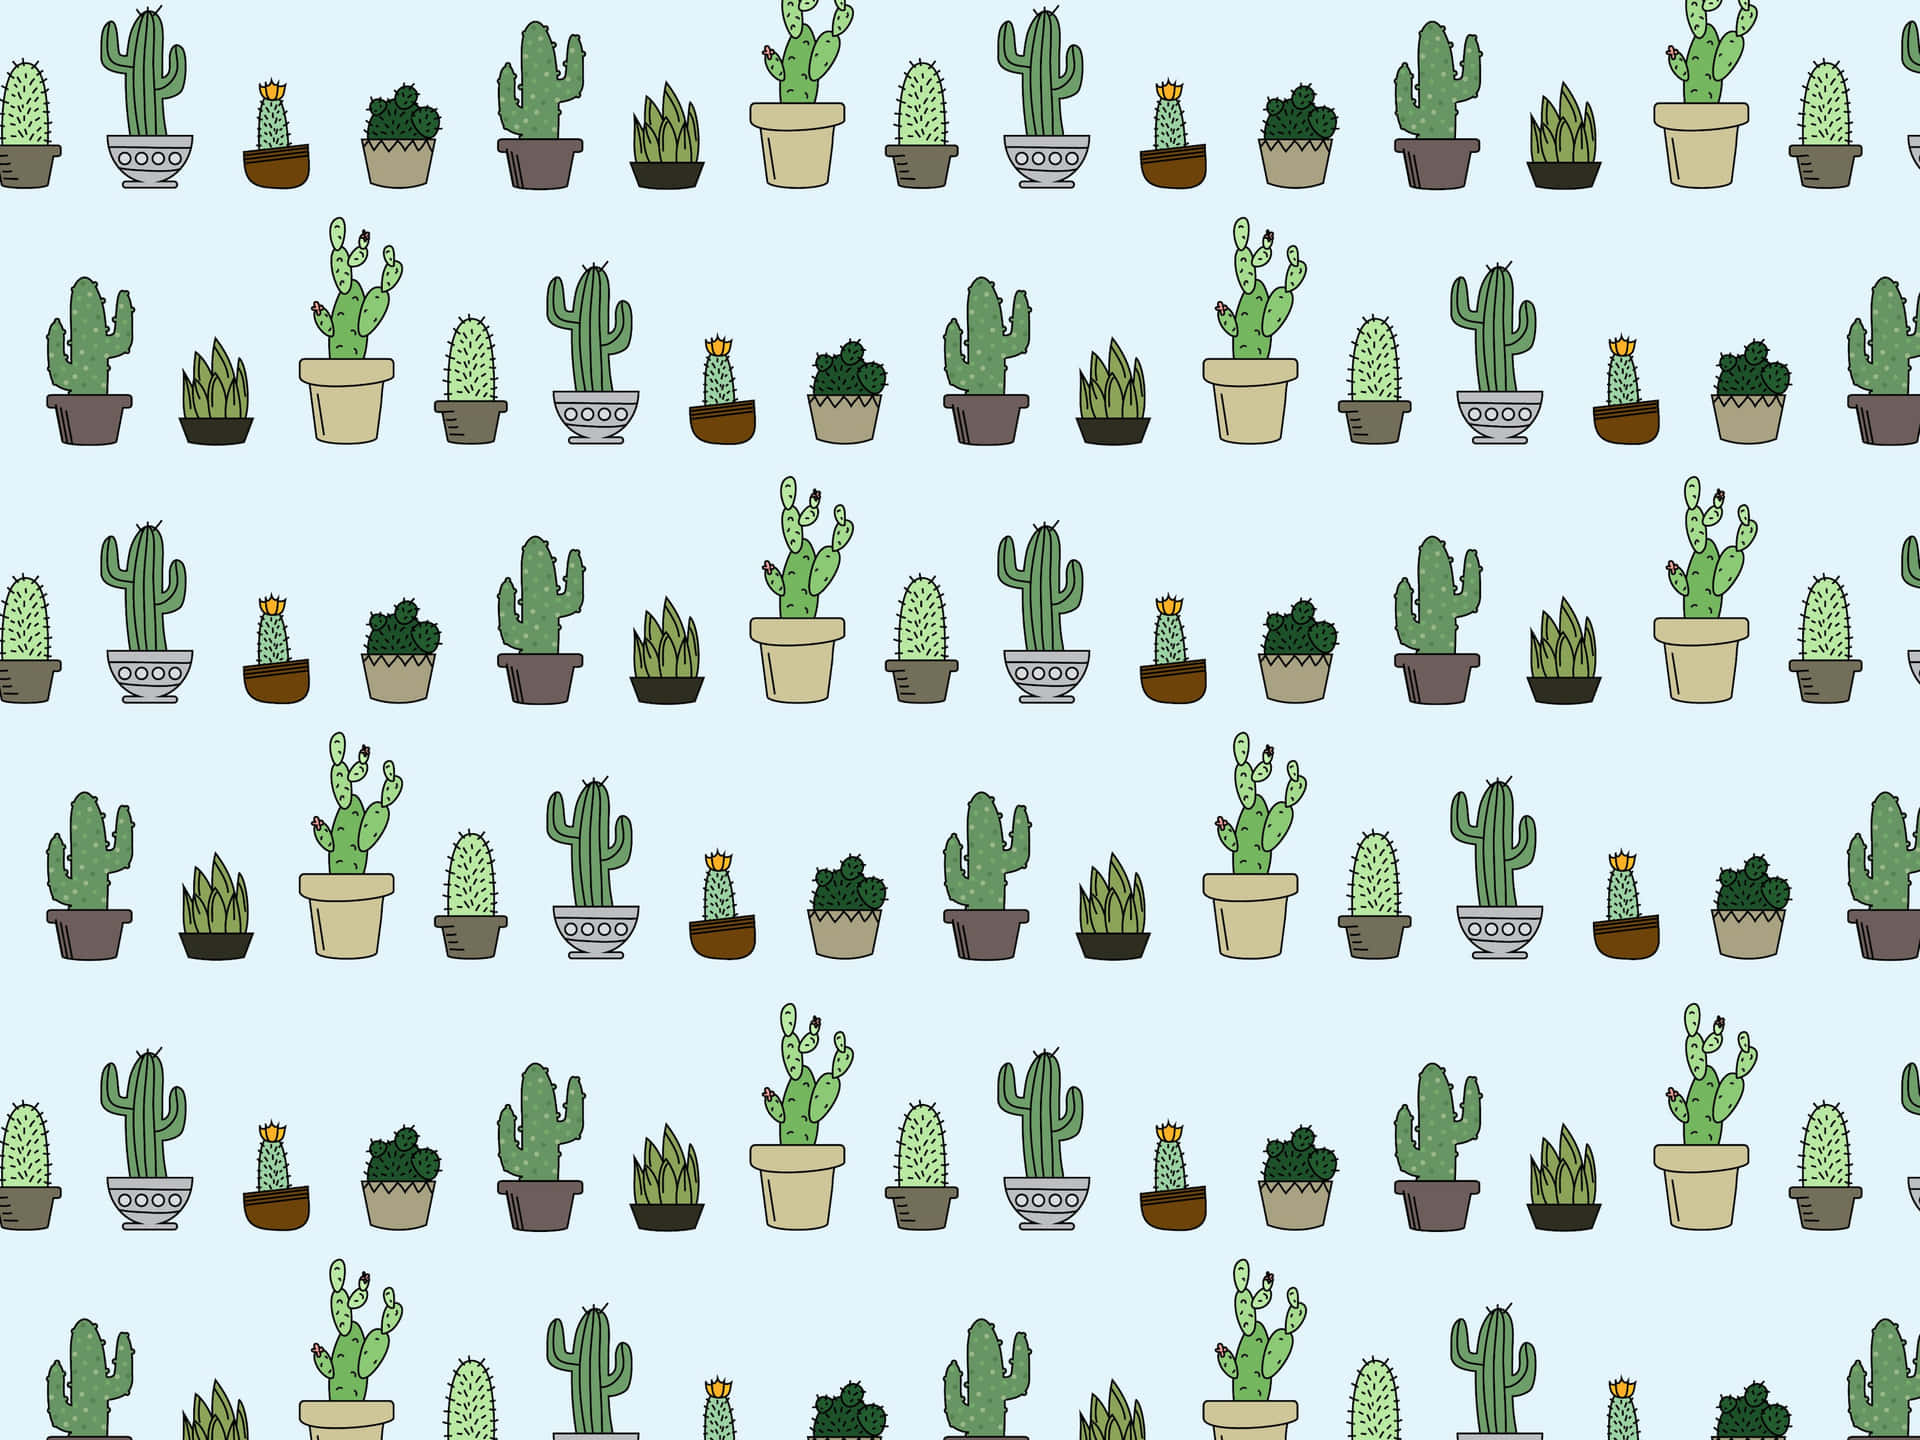 Kawaii Cactus: Adorable Cartoon Cacti Friends Wallpaper